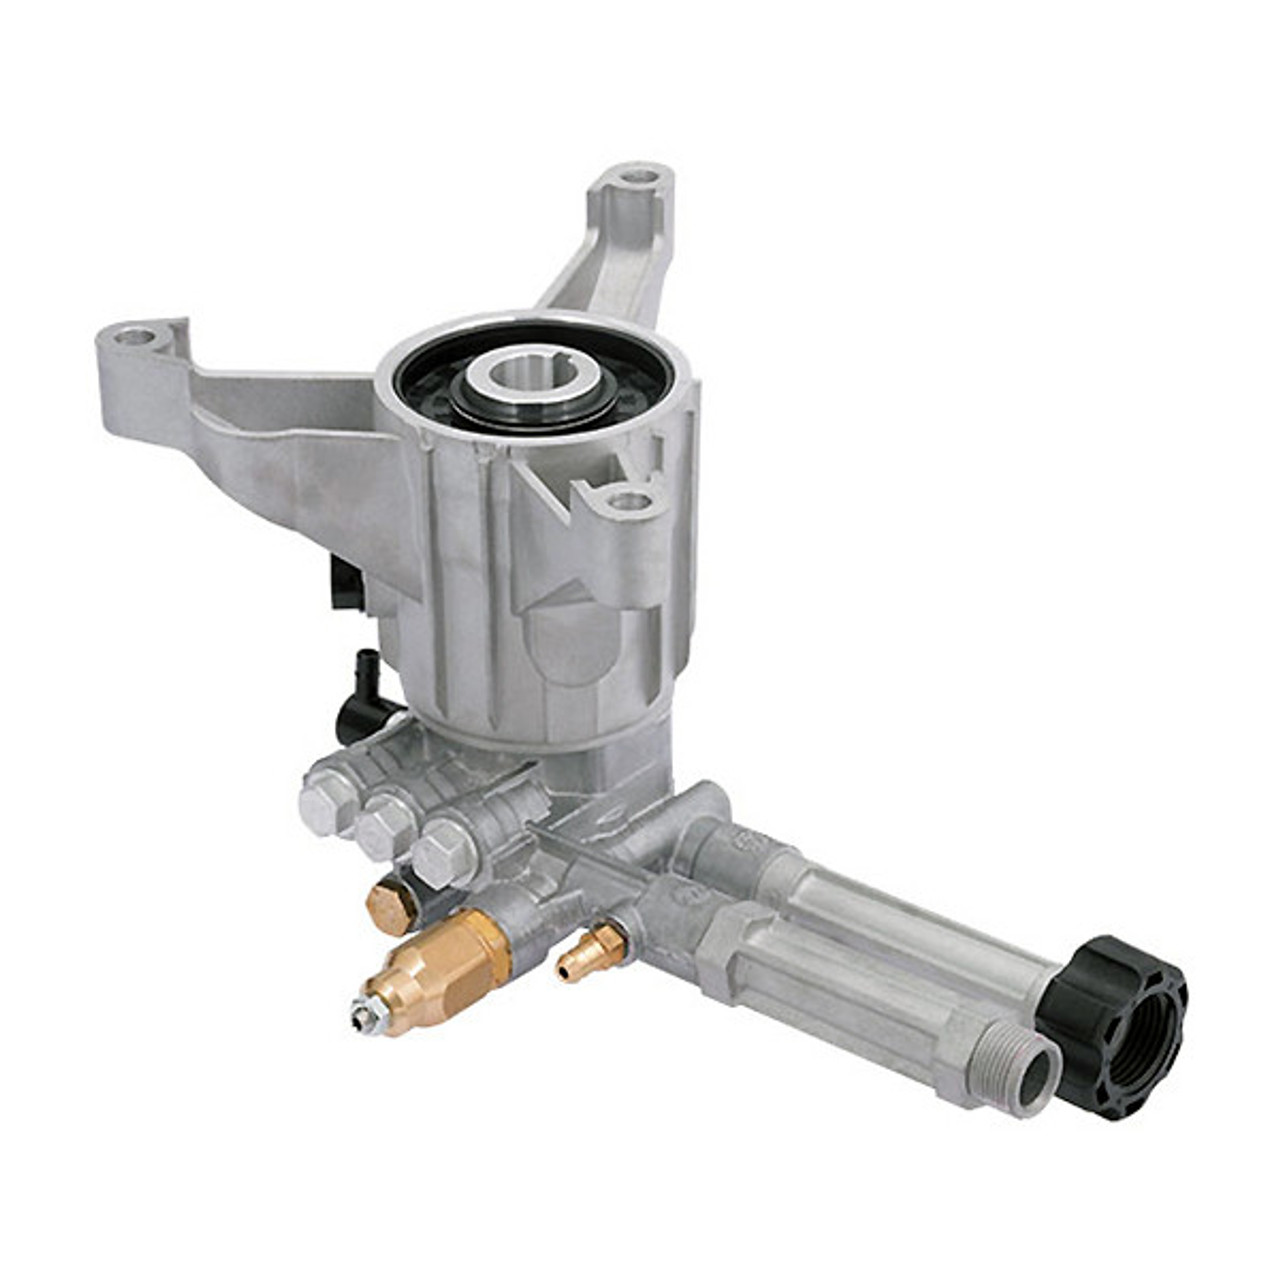 AR RMW22G24-EZ-SX Vertical Axial Pressure Washer Pump, 2400 PSI, 2.2 GPM